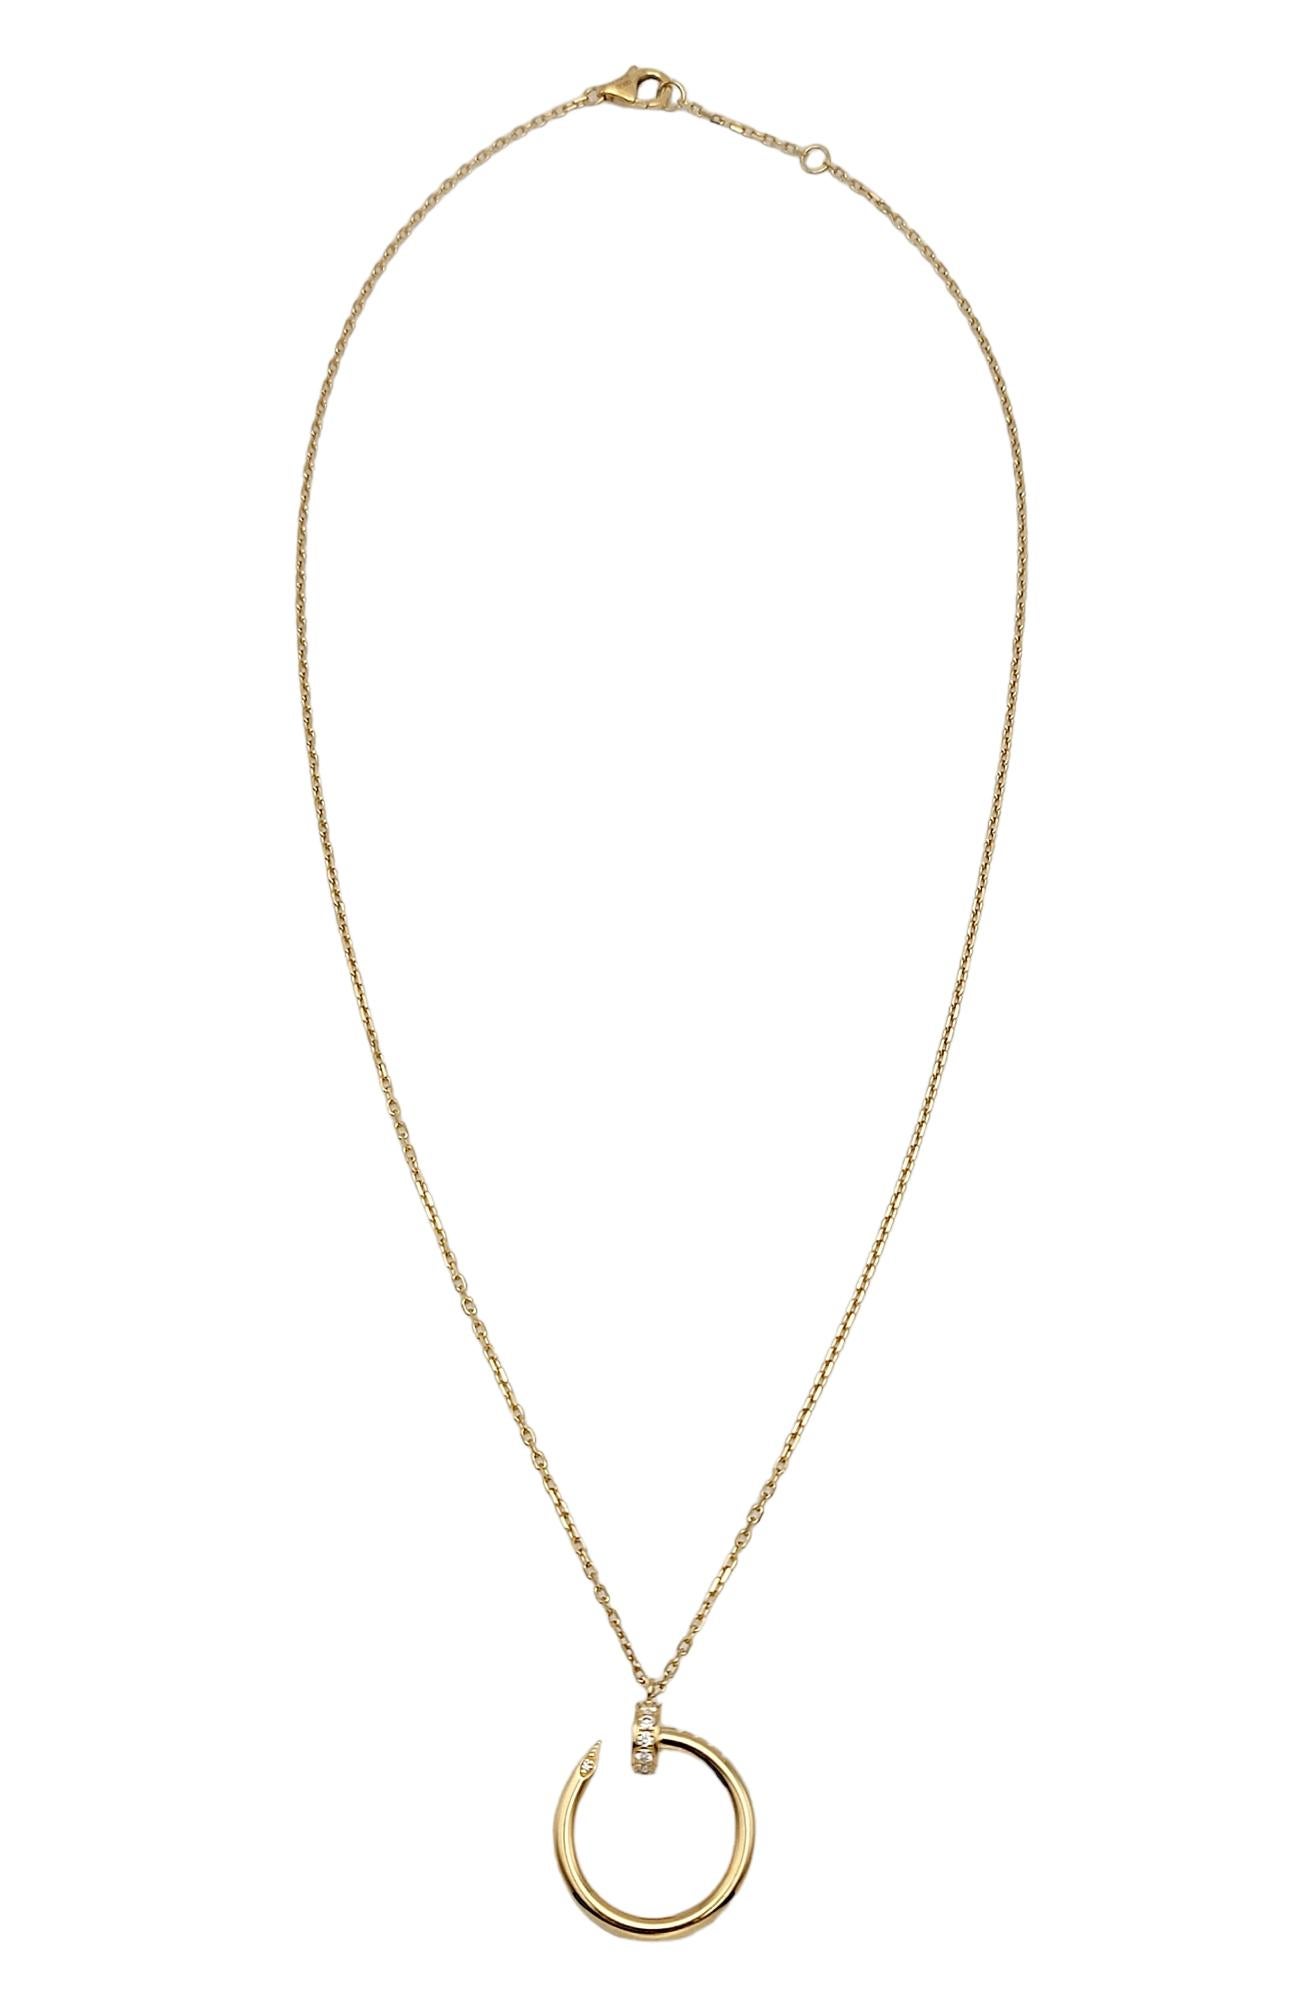 Women's Cartier Juste Un Clou 18 Karat Yellow Gold Pendant Necklace with Diamonds 14-16